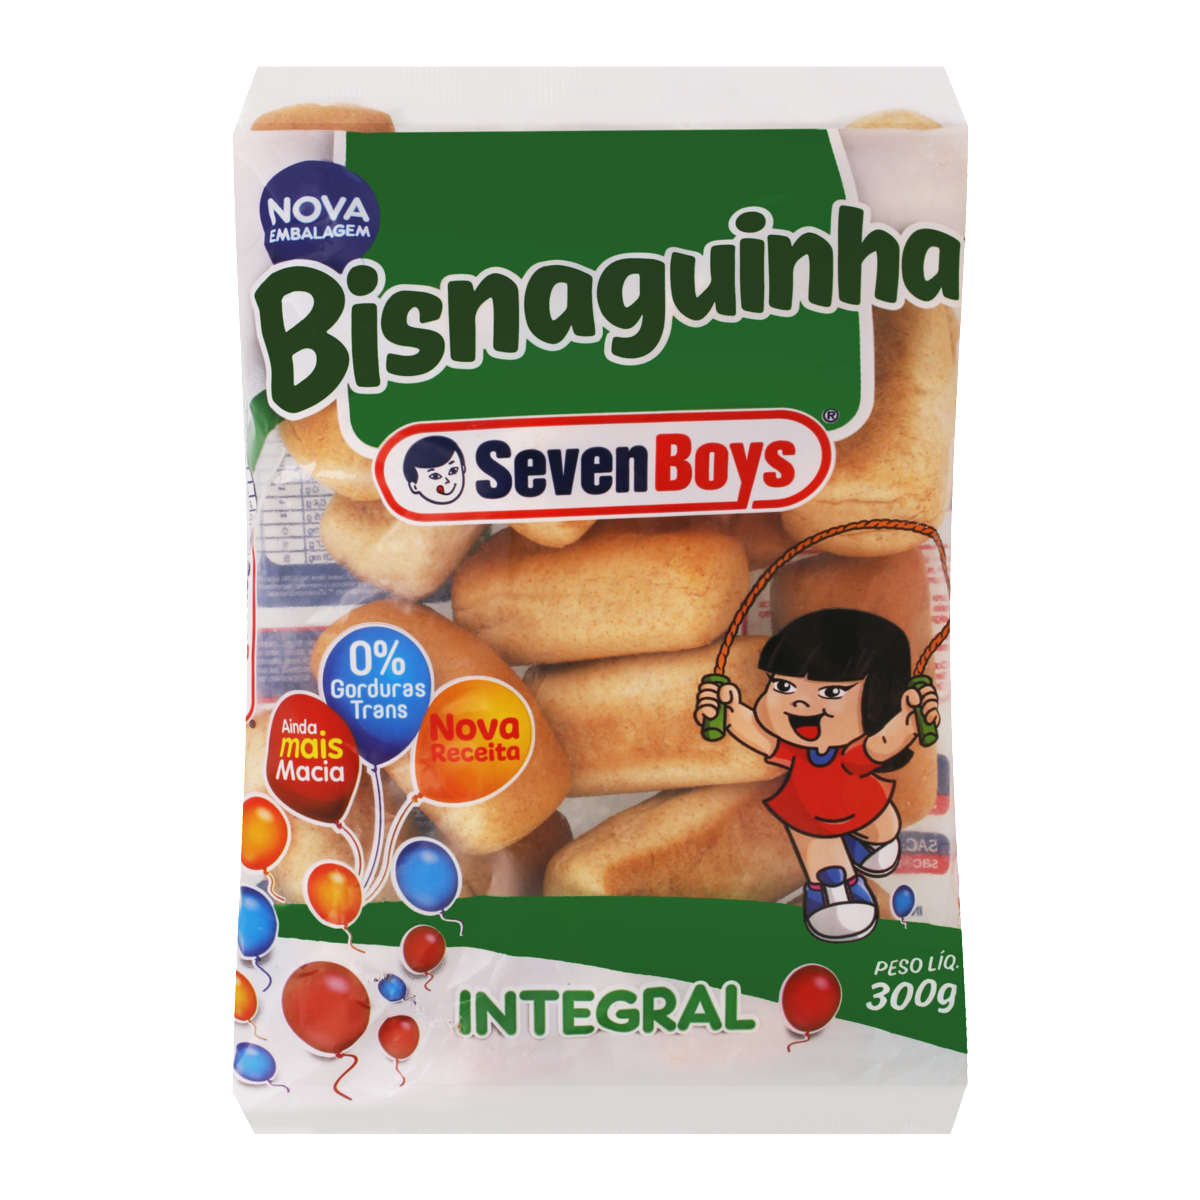 7891193010234 - PÃO BISNAGUINHA INTEGRAL SEVEN BOYS PACOTE 300G